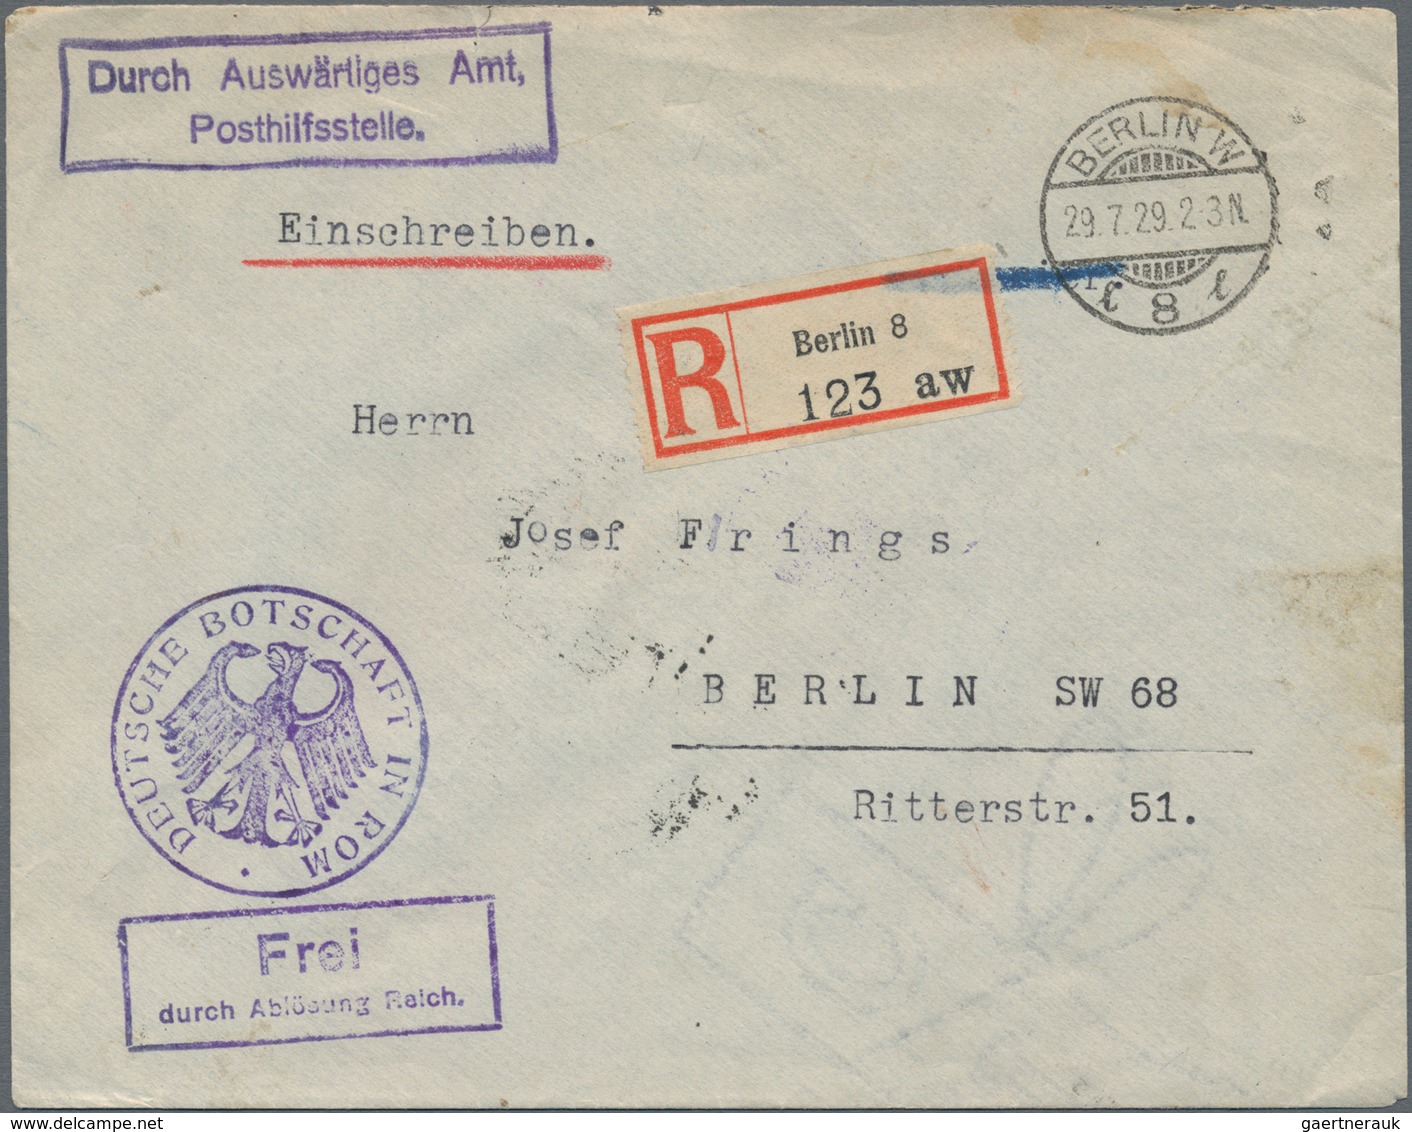 Deutschland - Besonderheiten: 1867/1955 ca., UNFRANKIERTE POST, reichhaltiger Sammlungsbestand mit c